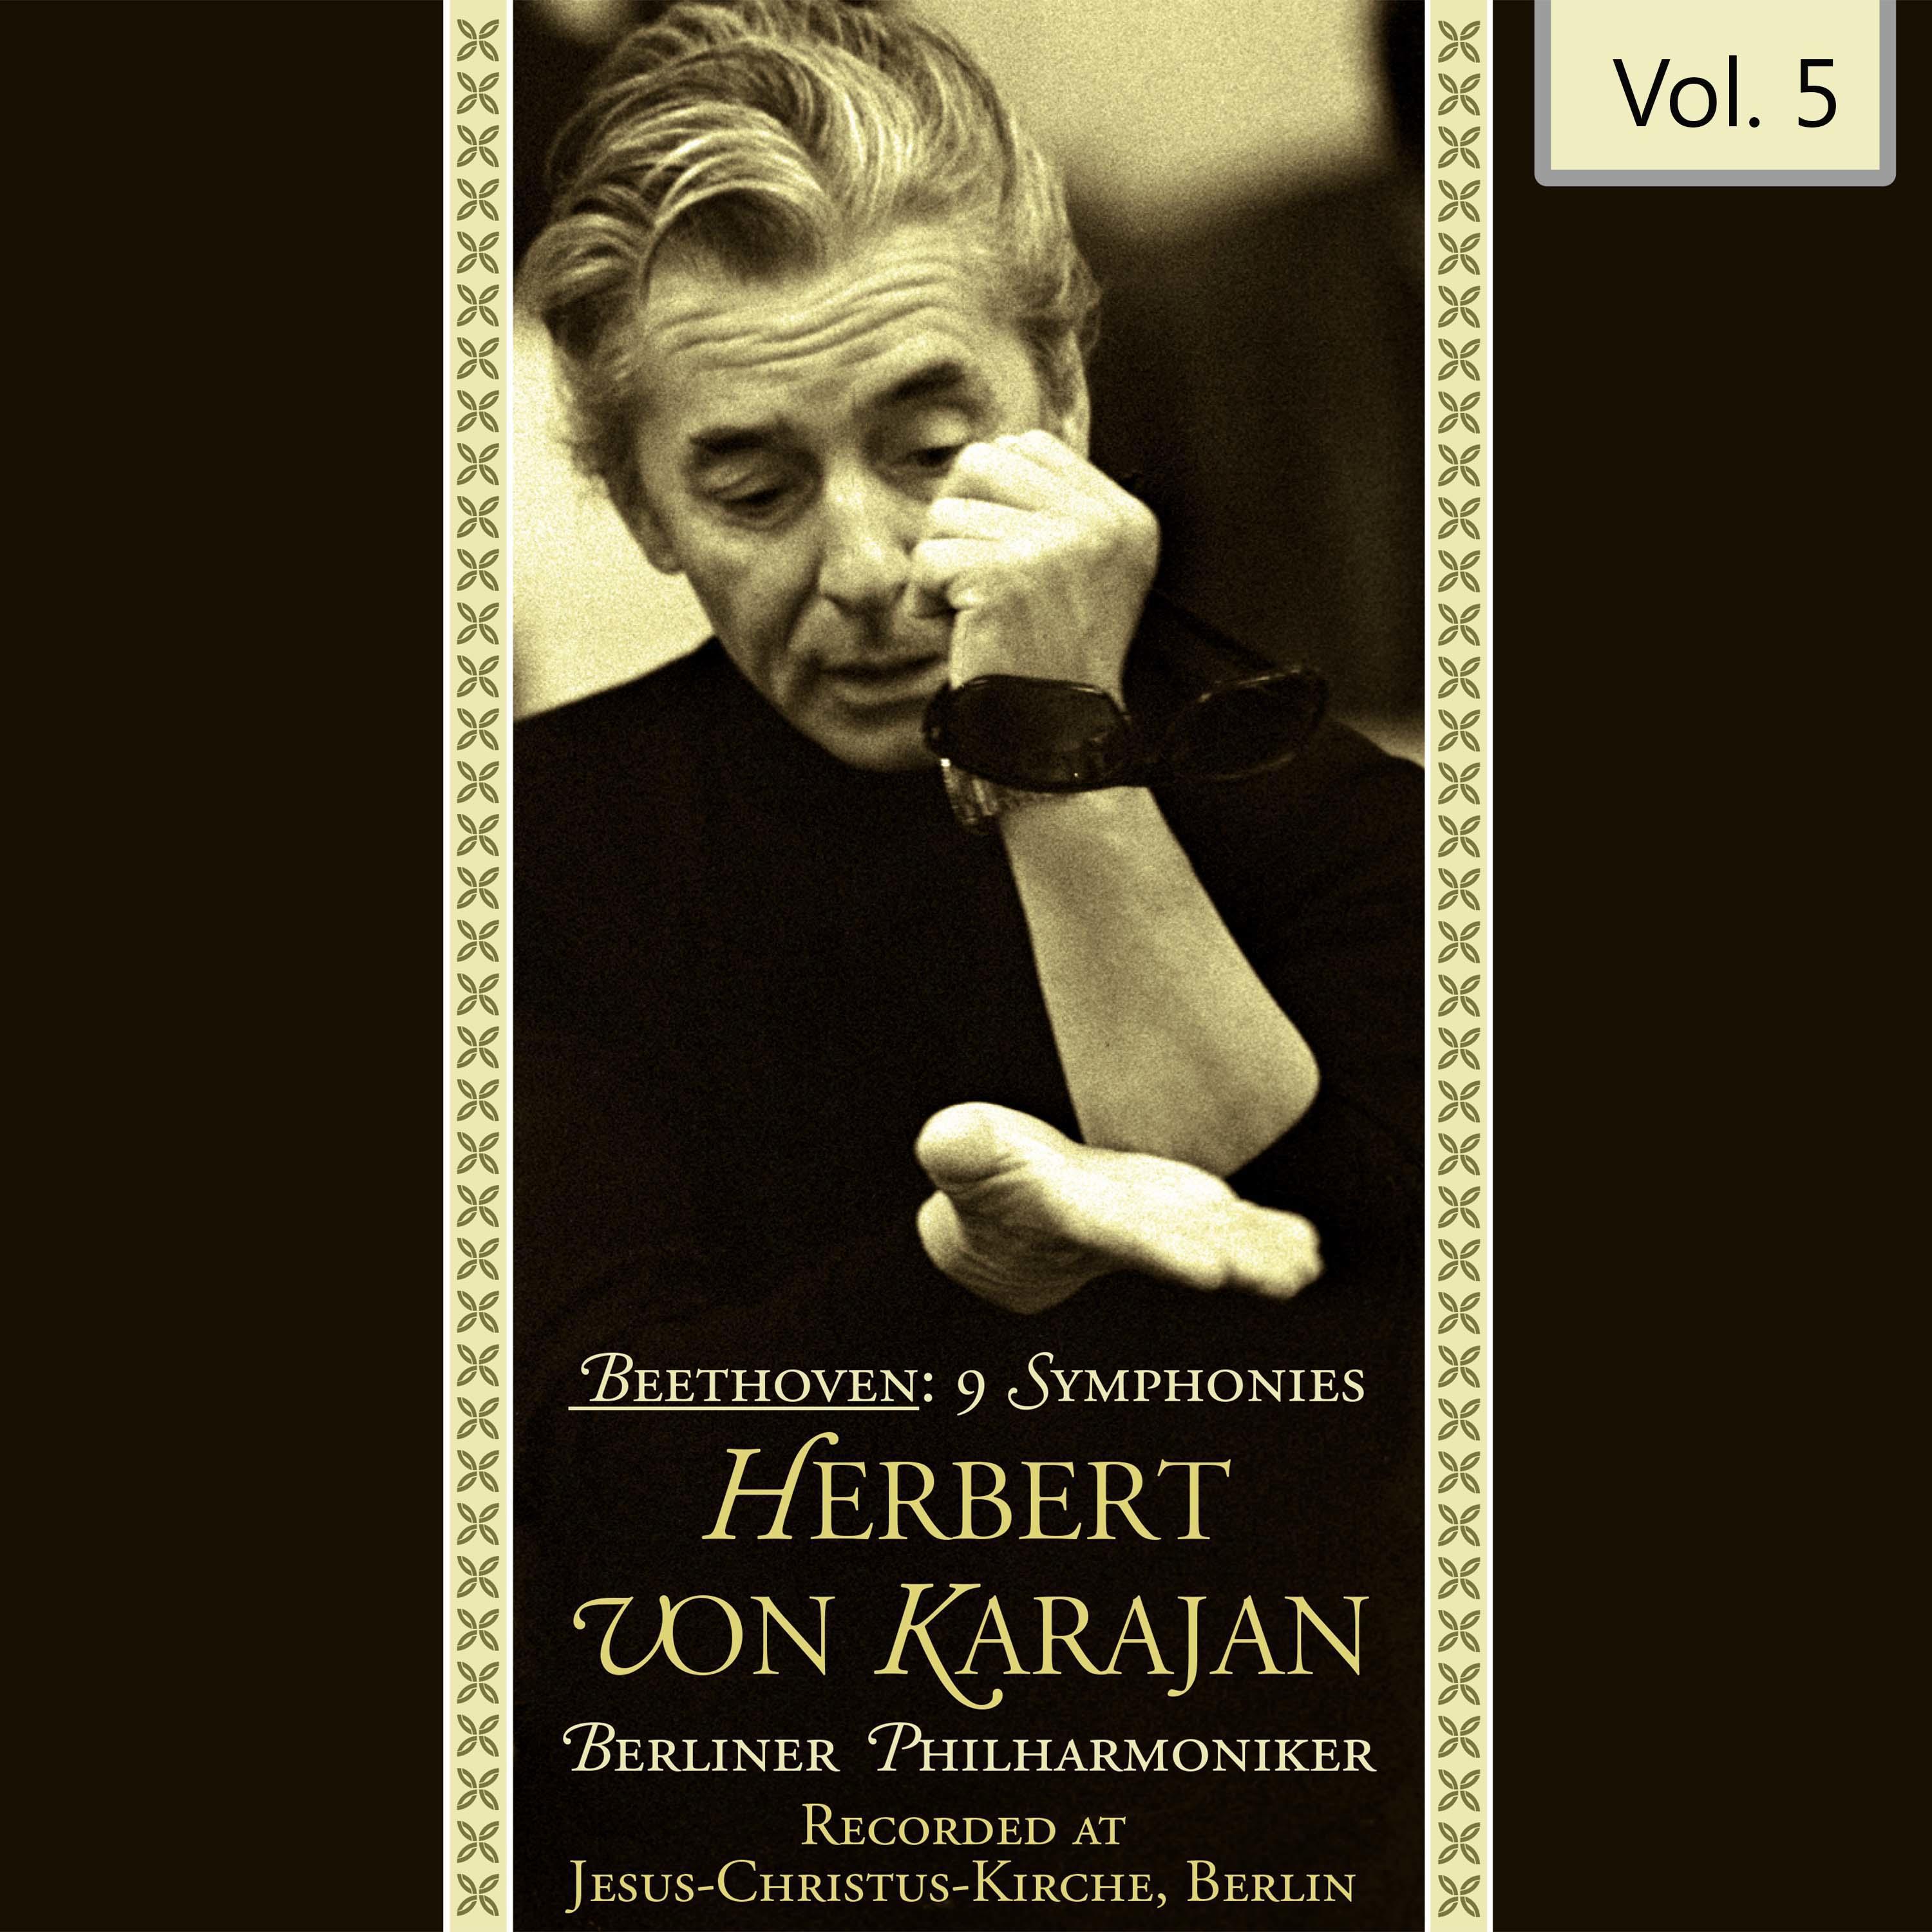 Beethoven: 9 Symphonies - Herbert Von Karajan, Vol. 5专辑